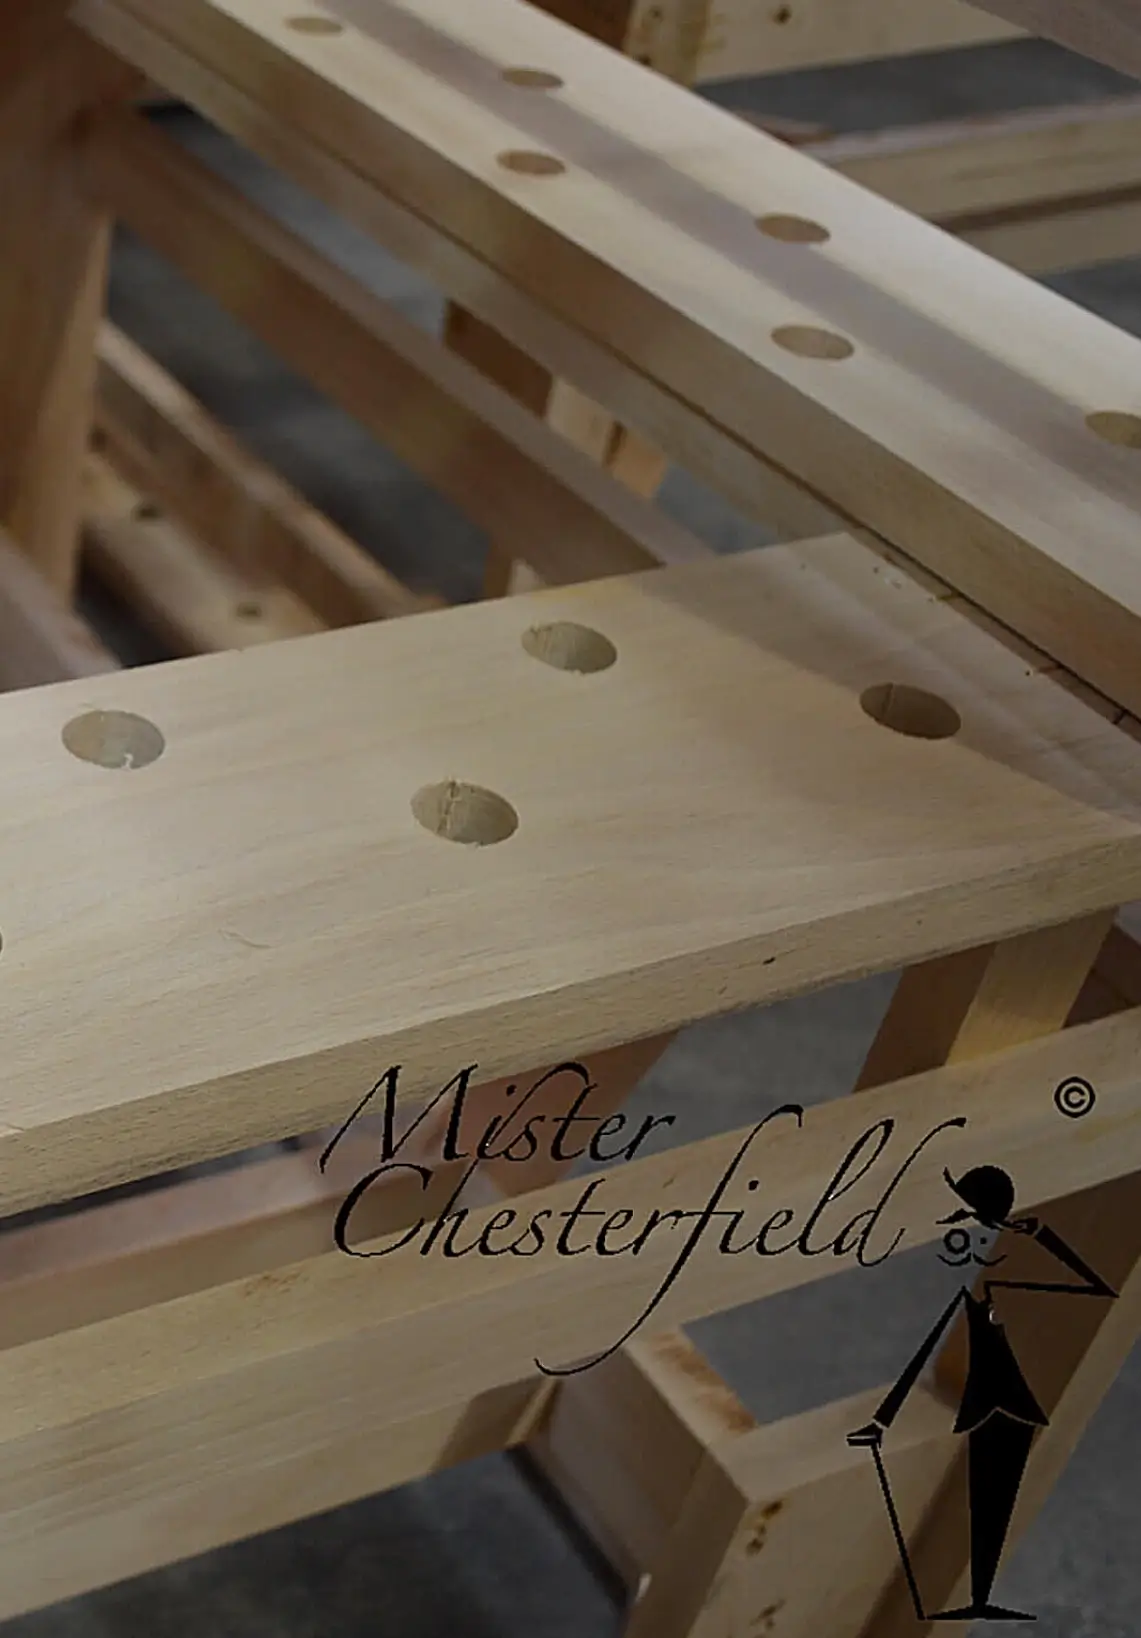 Chesterfield materialen hout frame beuken